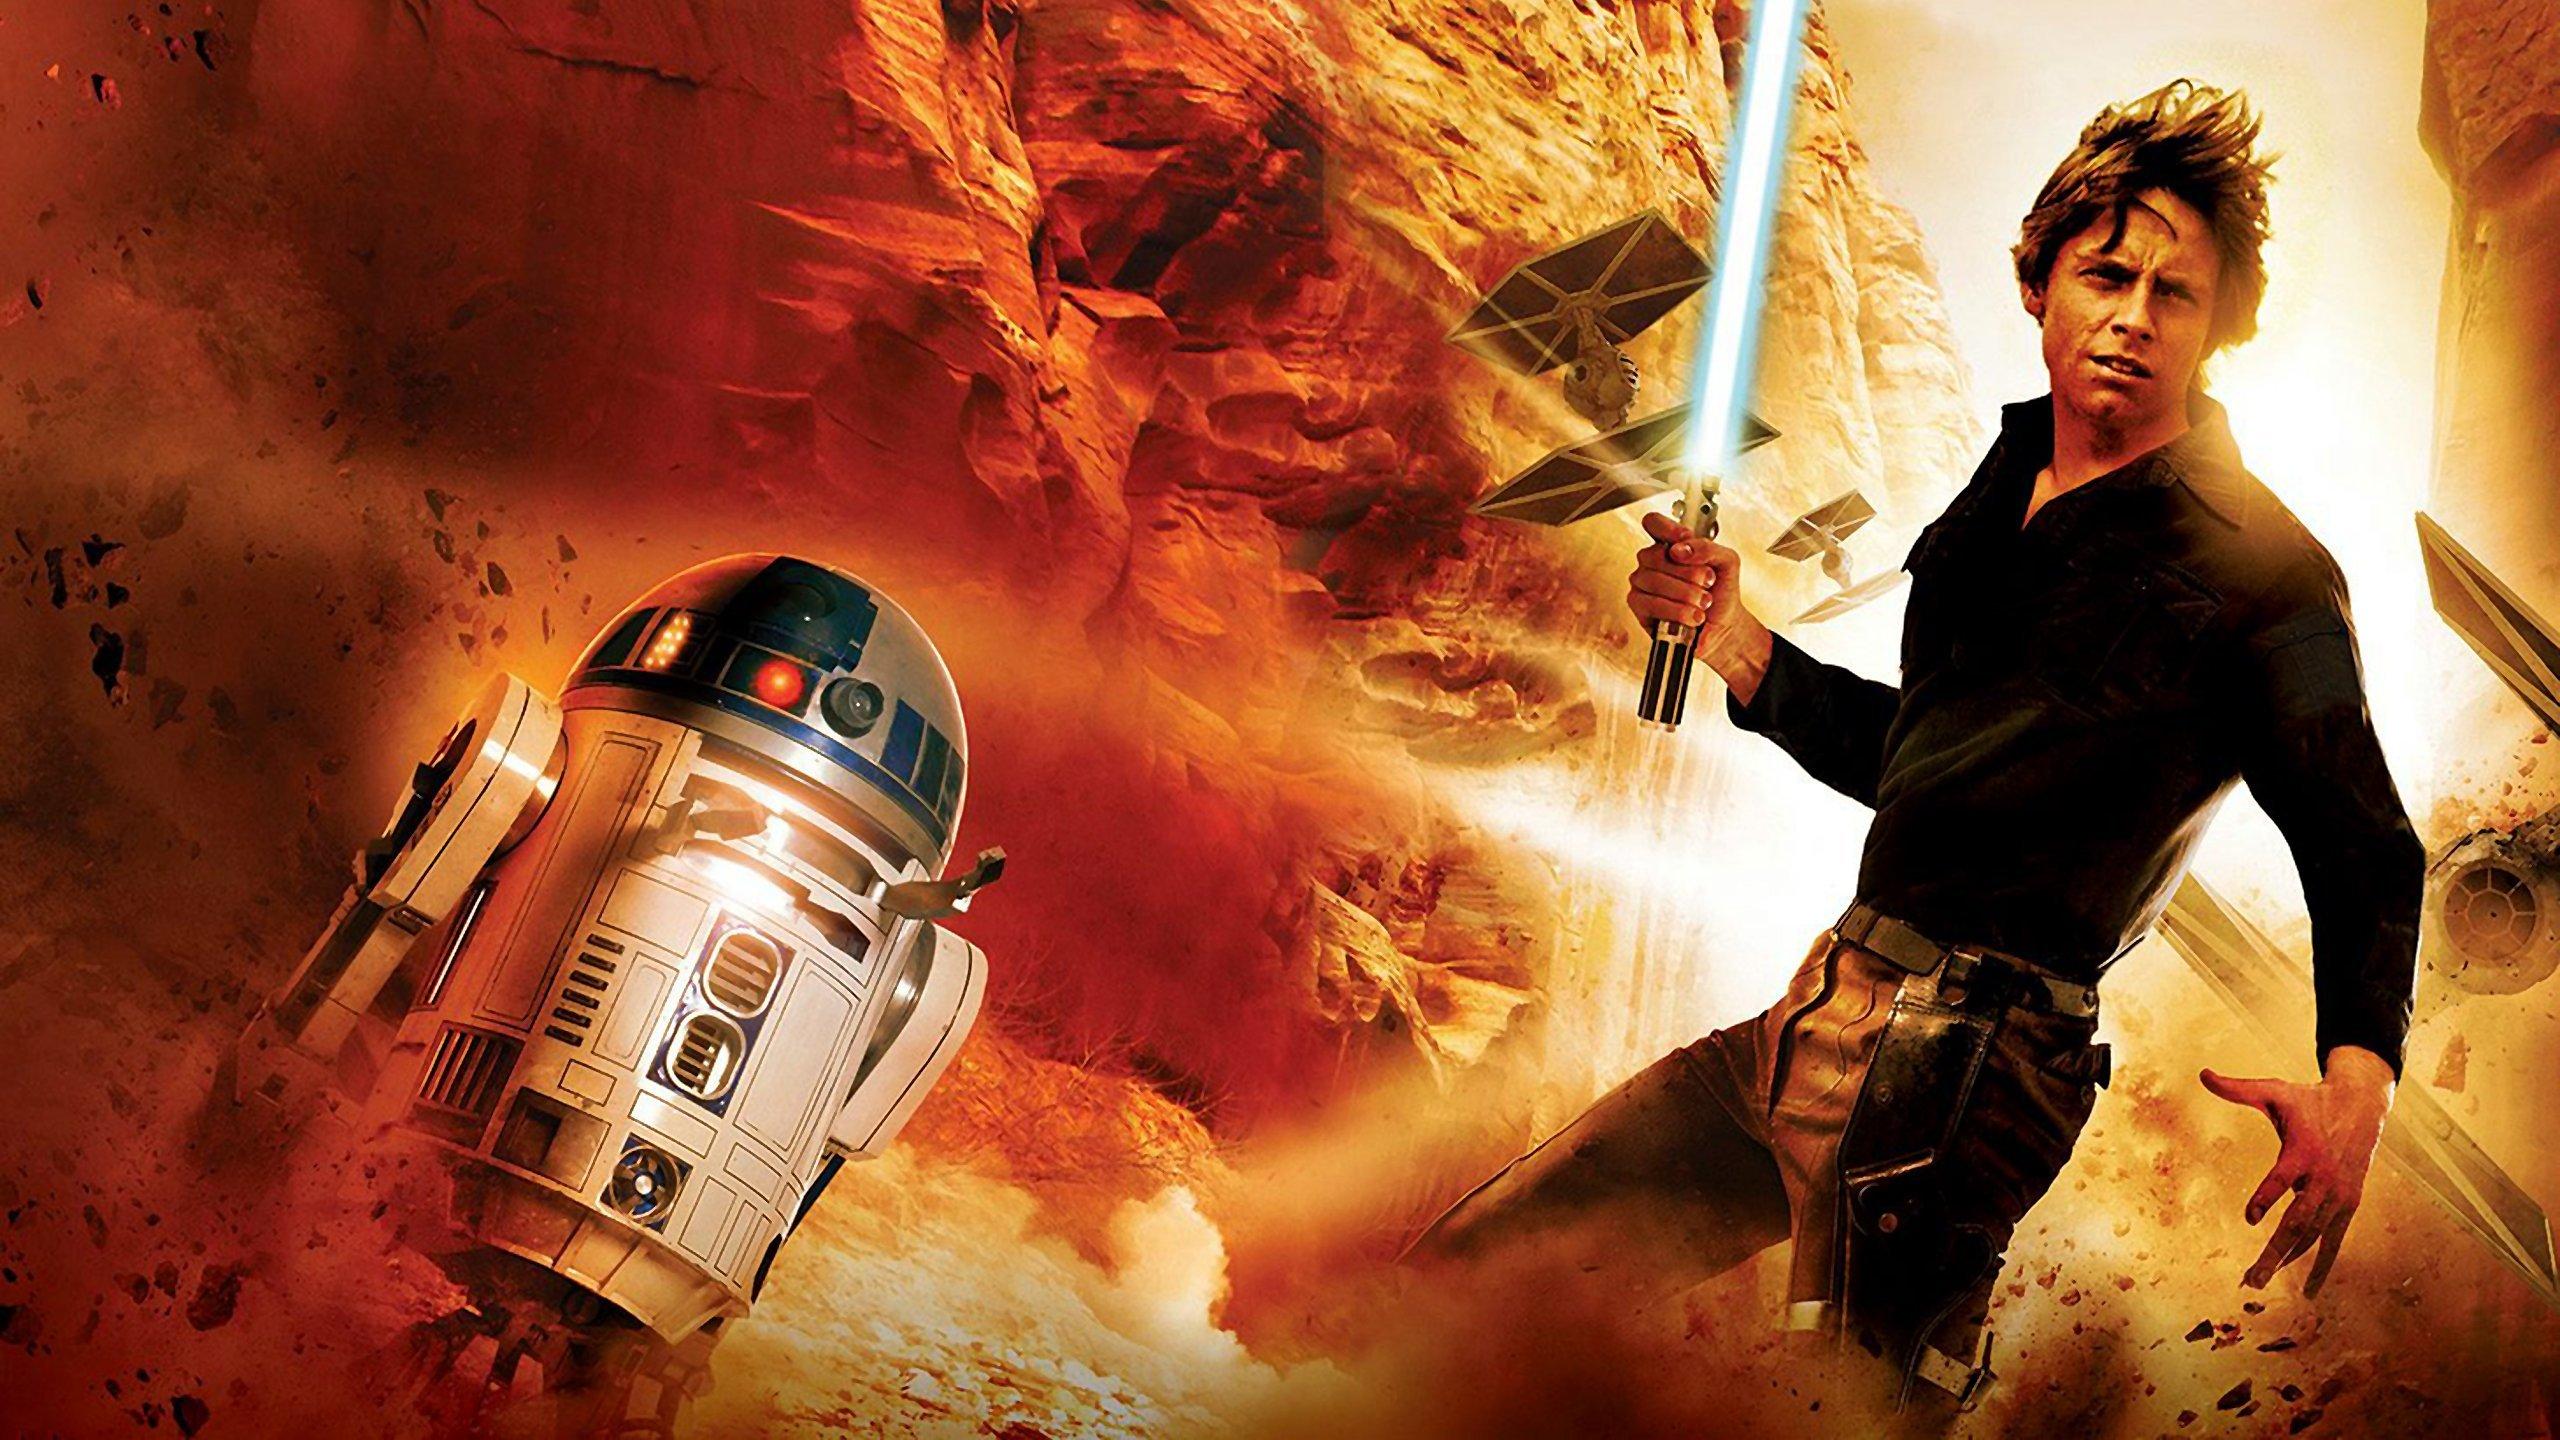 Luke Skywalker wallpaper 2560x1440 desktop background